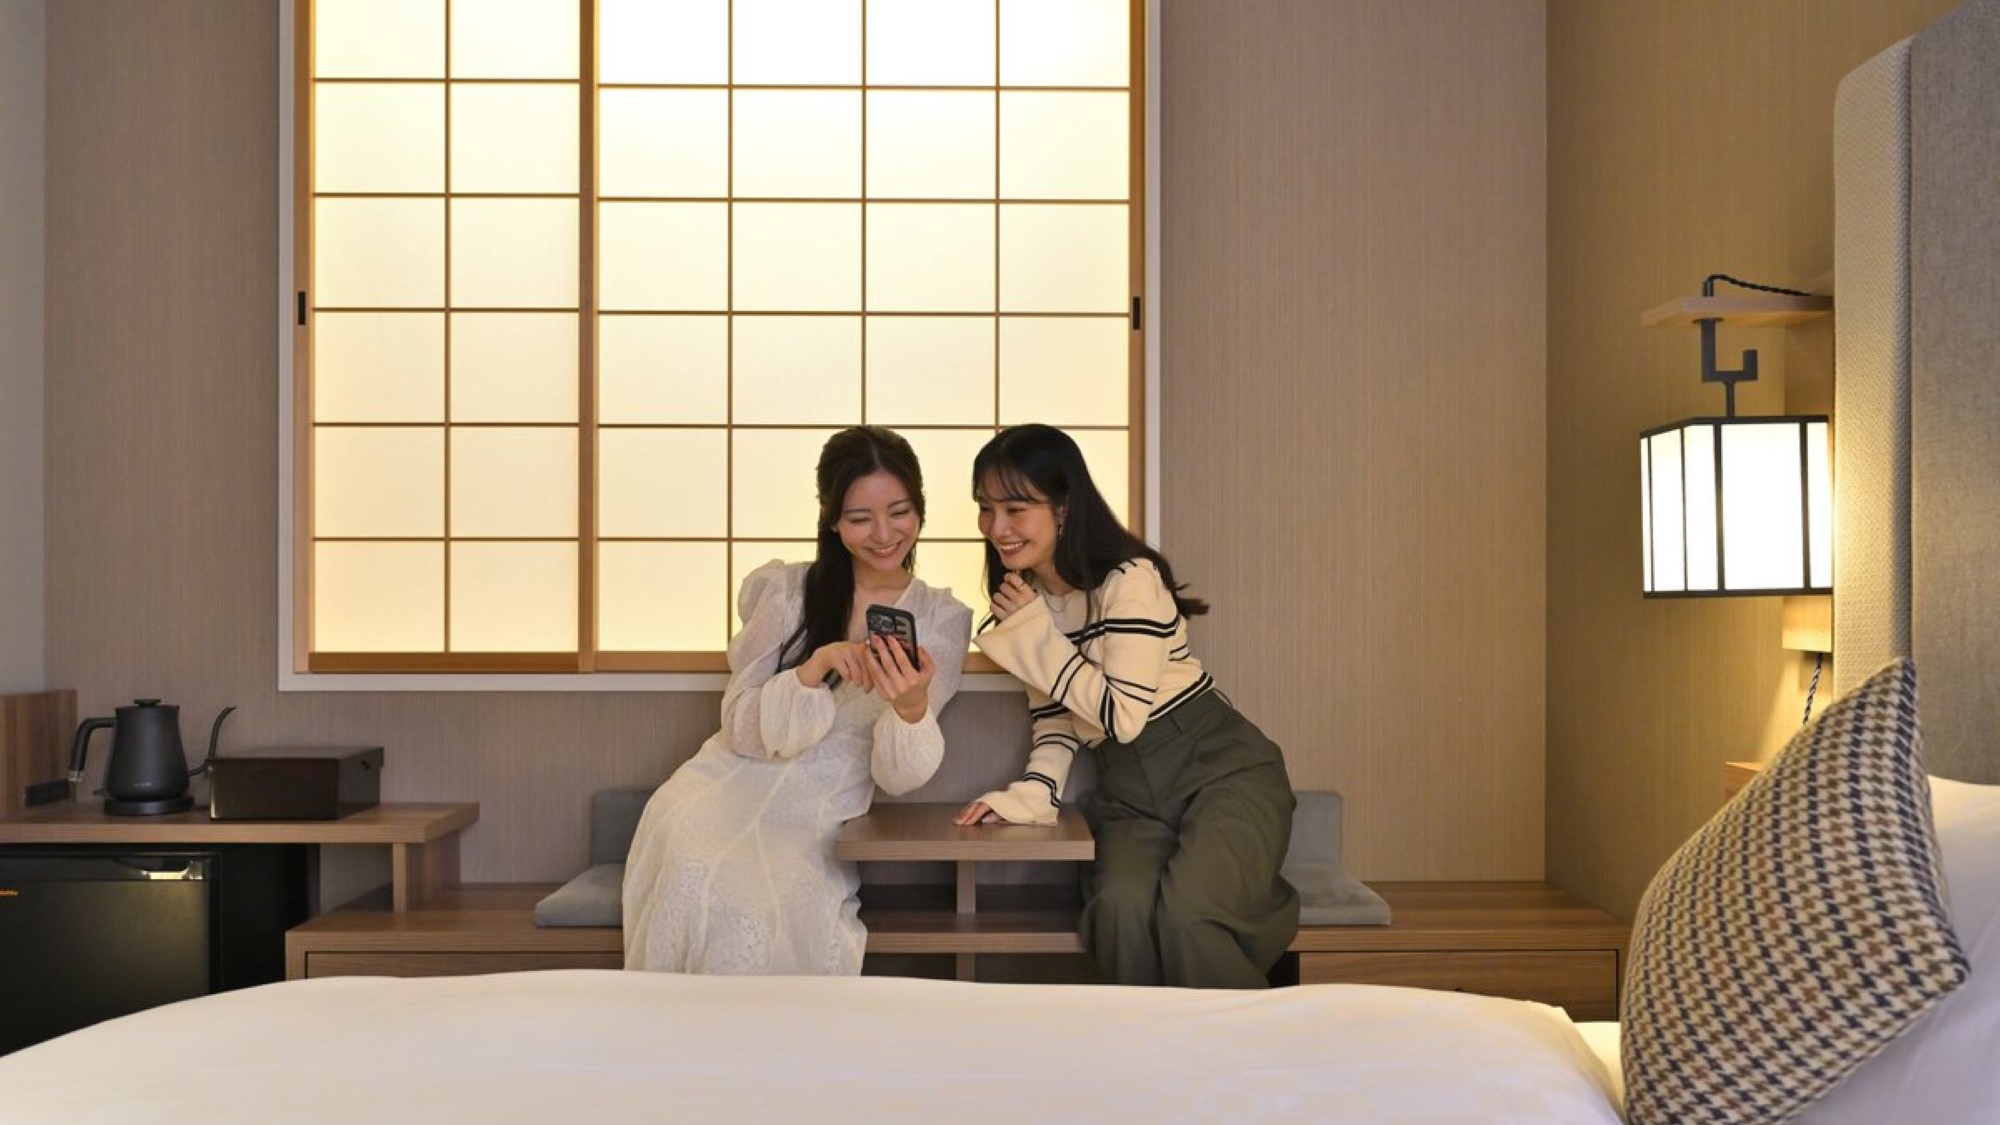 【客室】襖、障子に加え、日本の伝統的な生活文化であるタタミを採用。